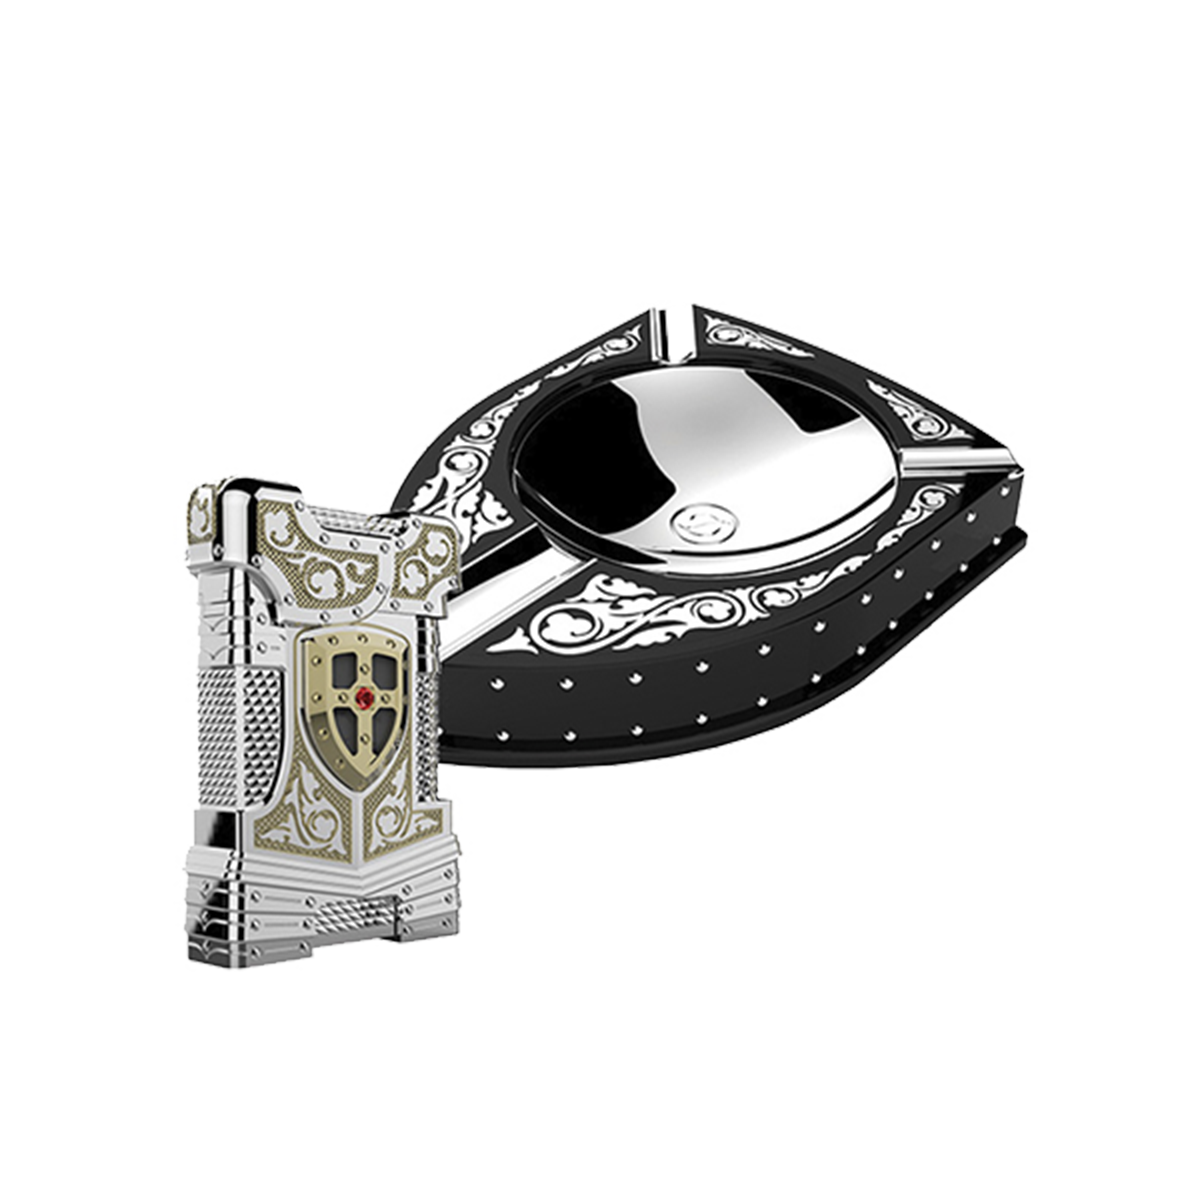 Подарочный набор Prestige: зажигалка и пепельница White Knight 16173 Цвет Многоцветный Золото, палладиевое покрытие, яшма и рубин | S.T. Dupont